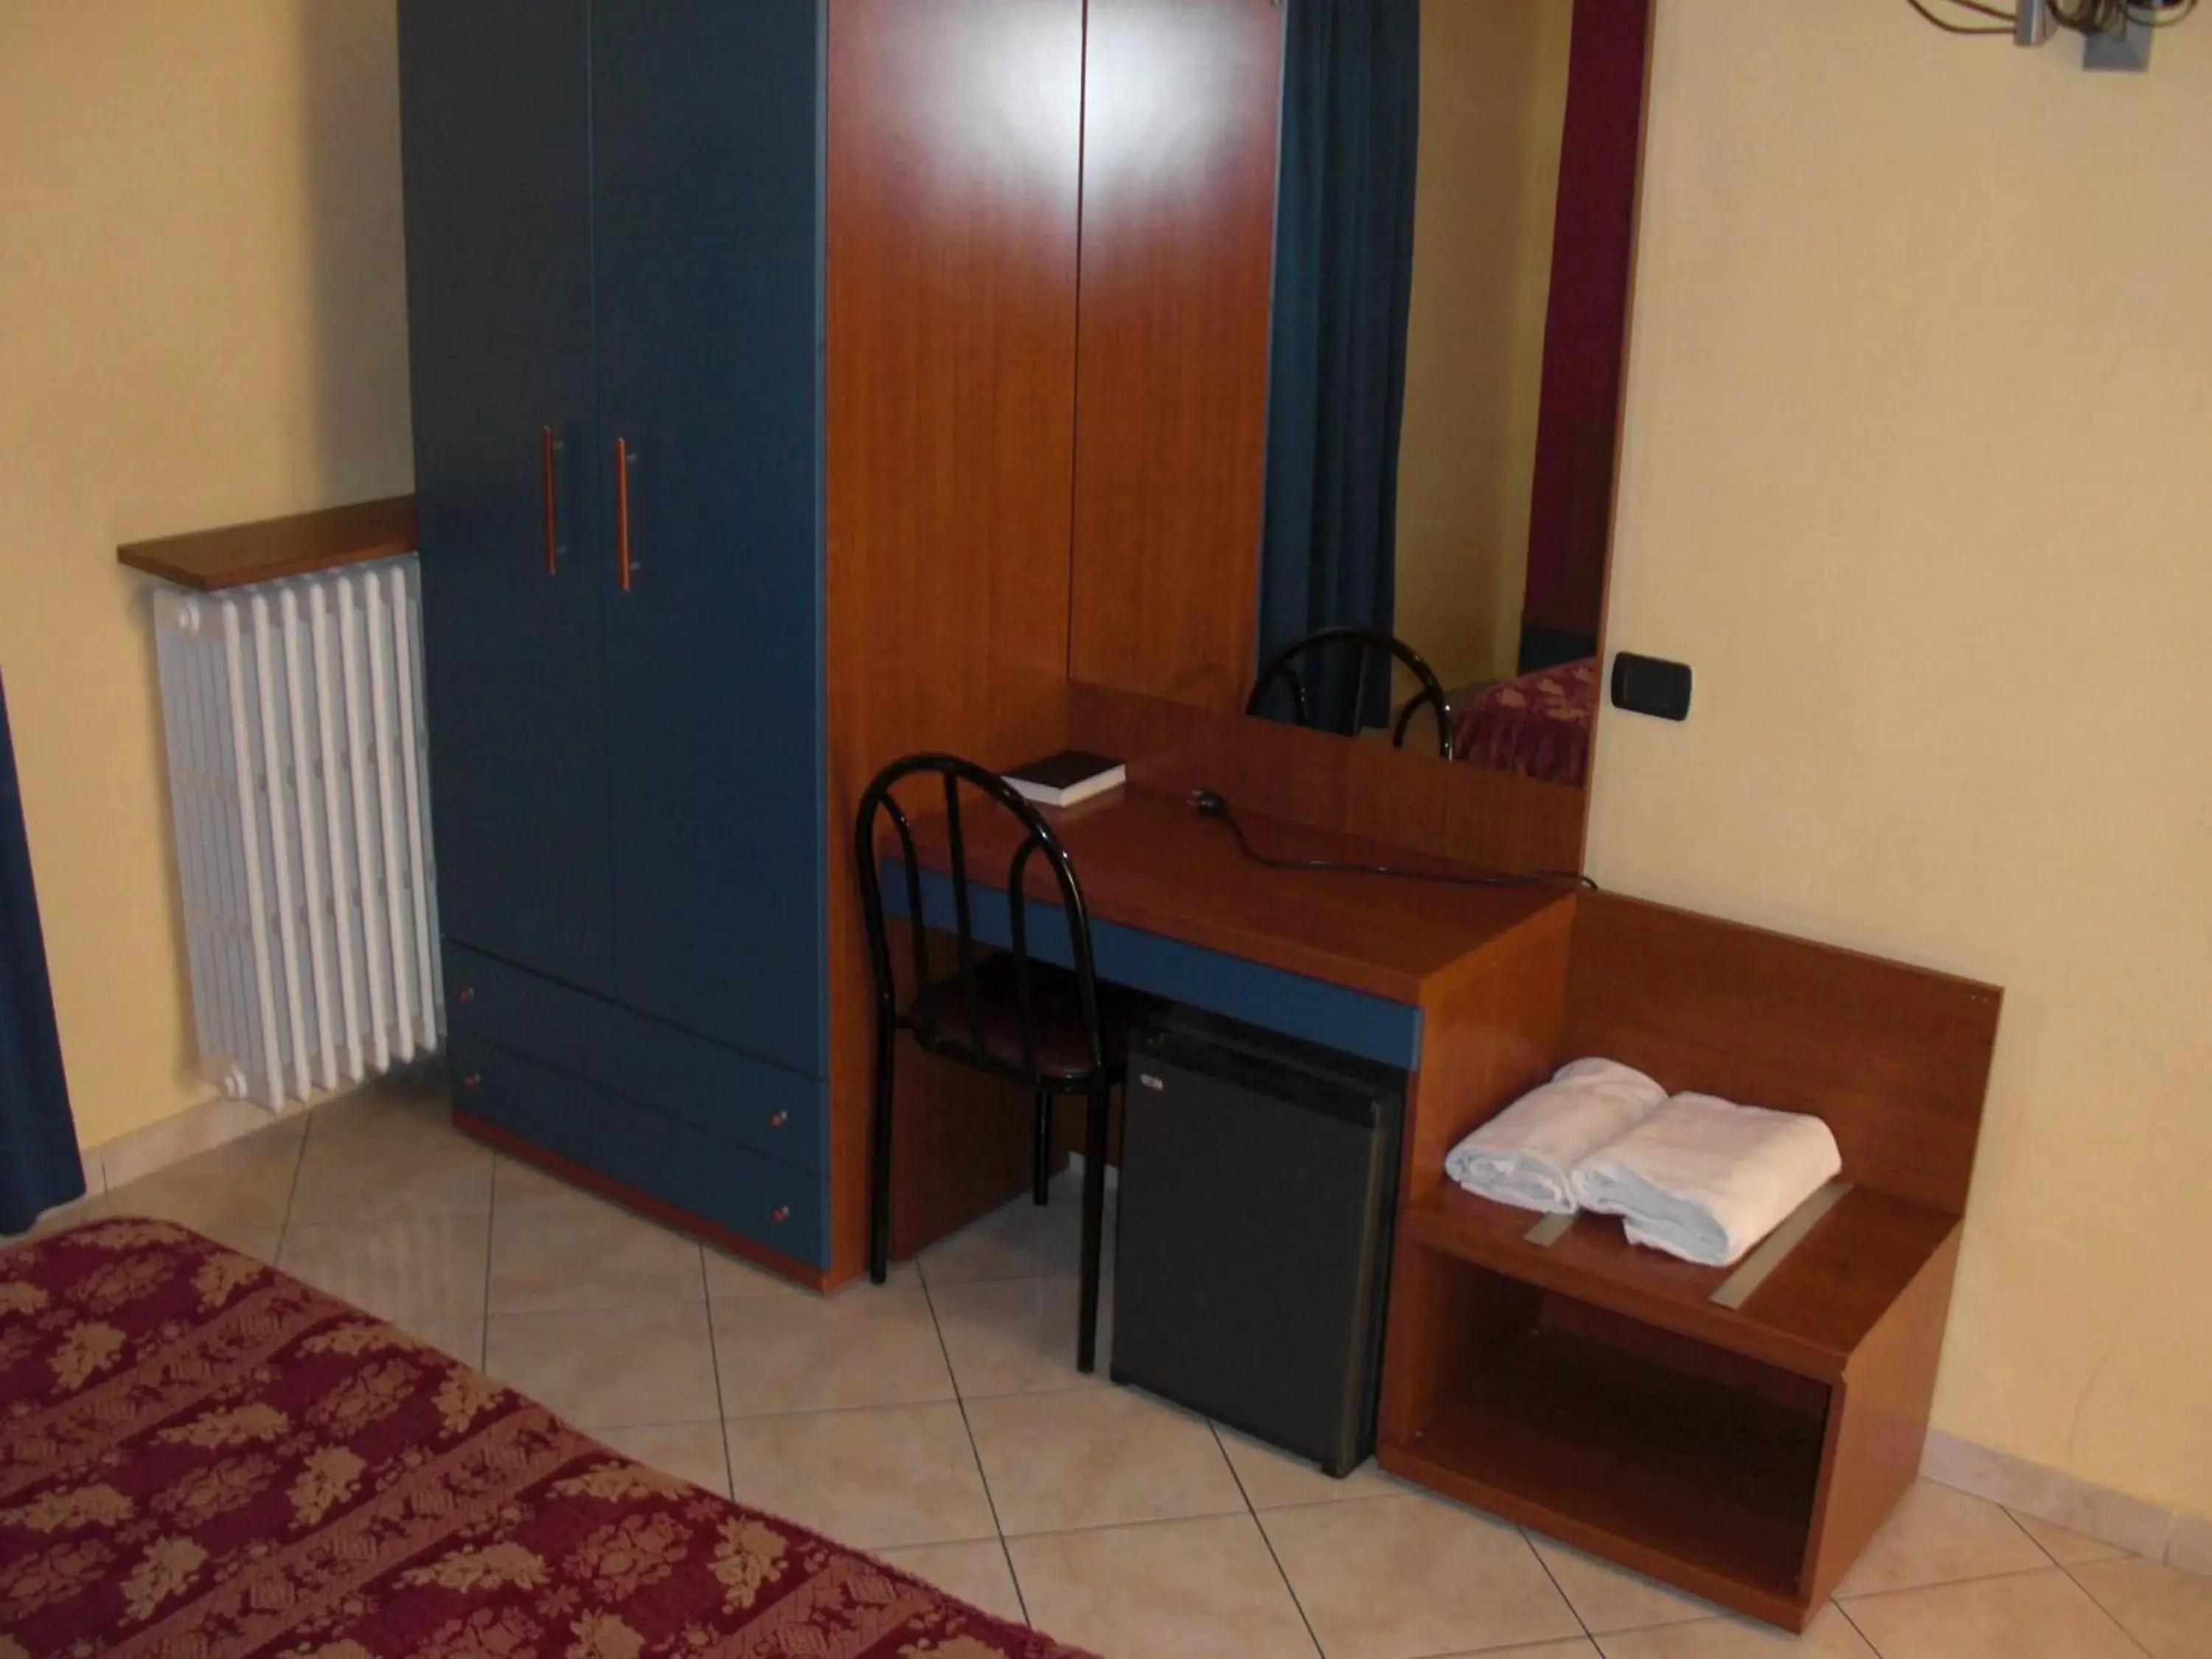 Bedroom, Bathroom in Hotel Legnano